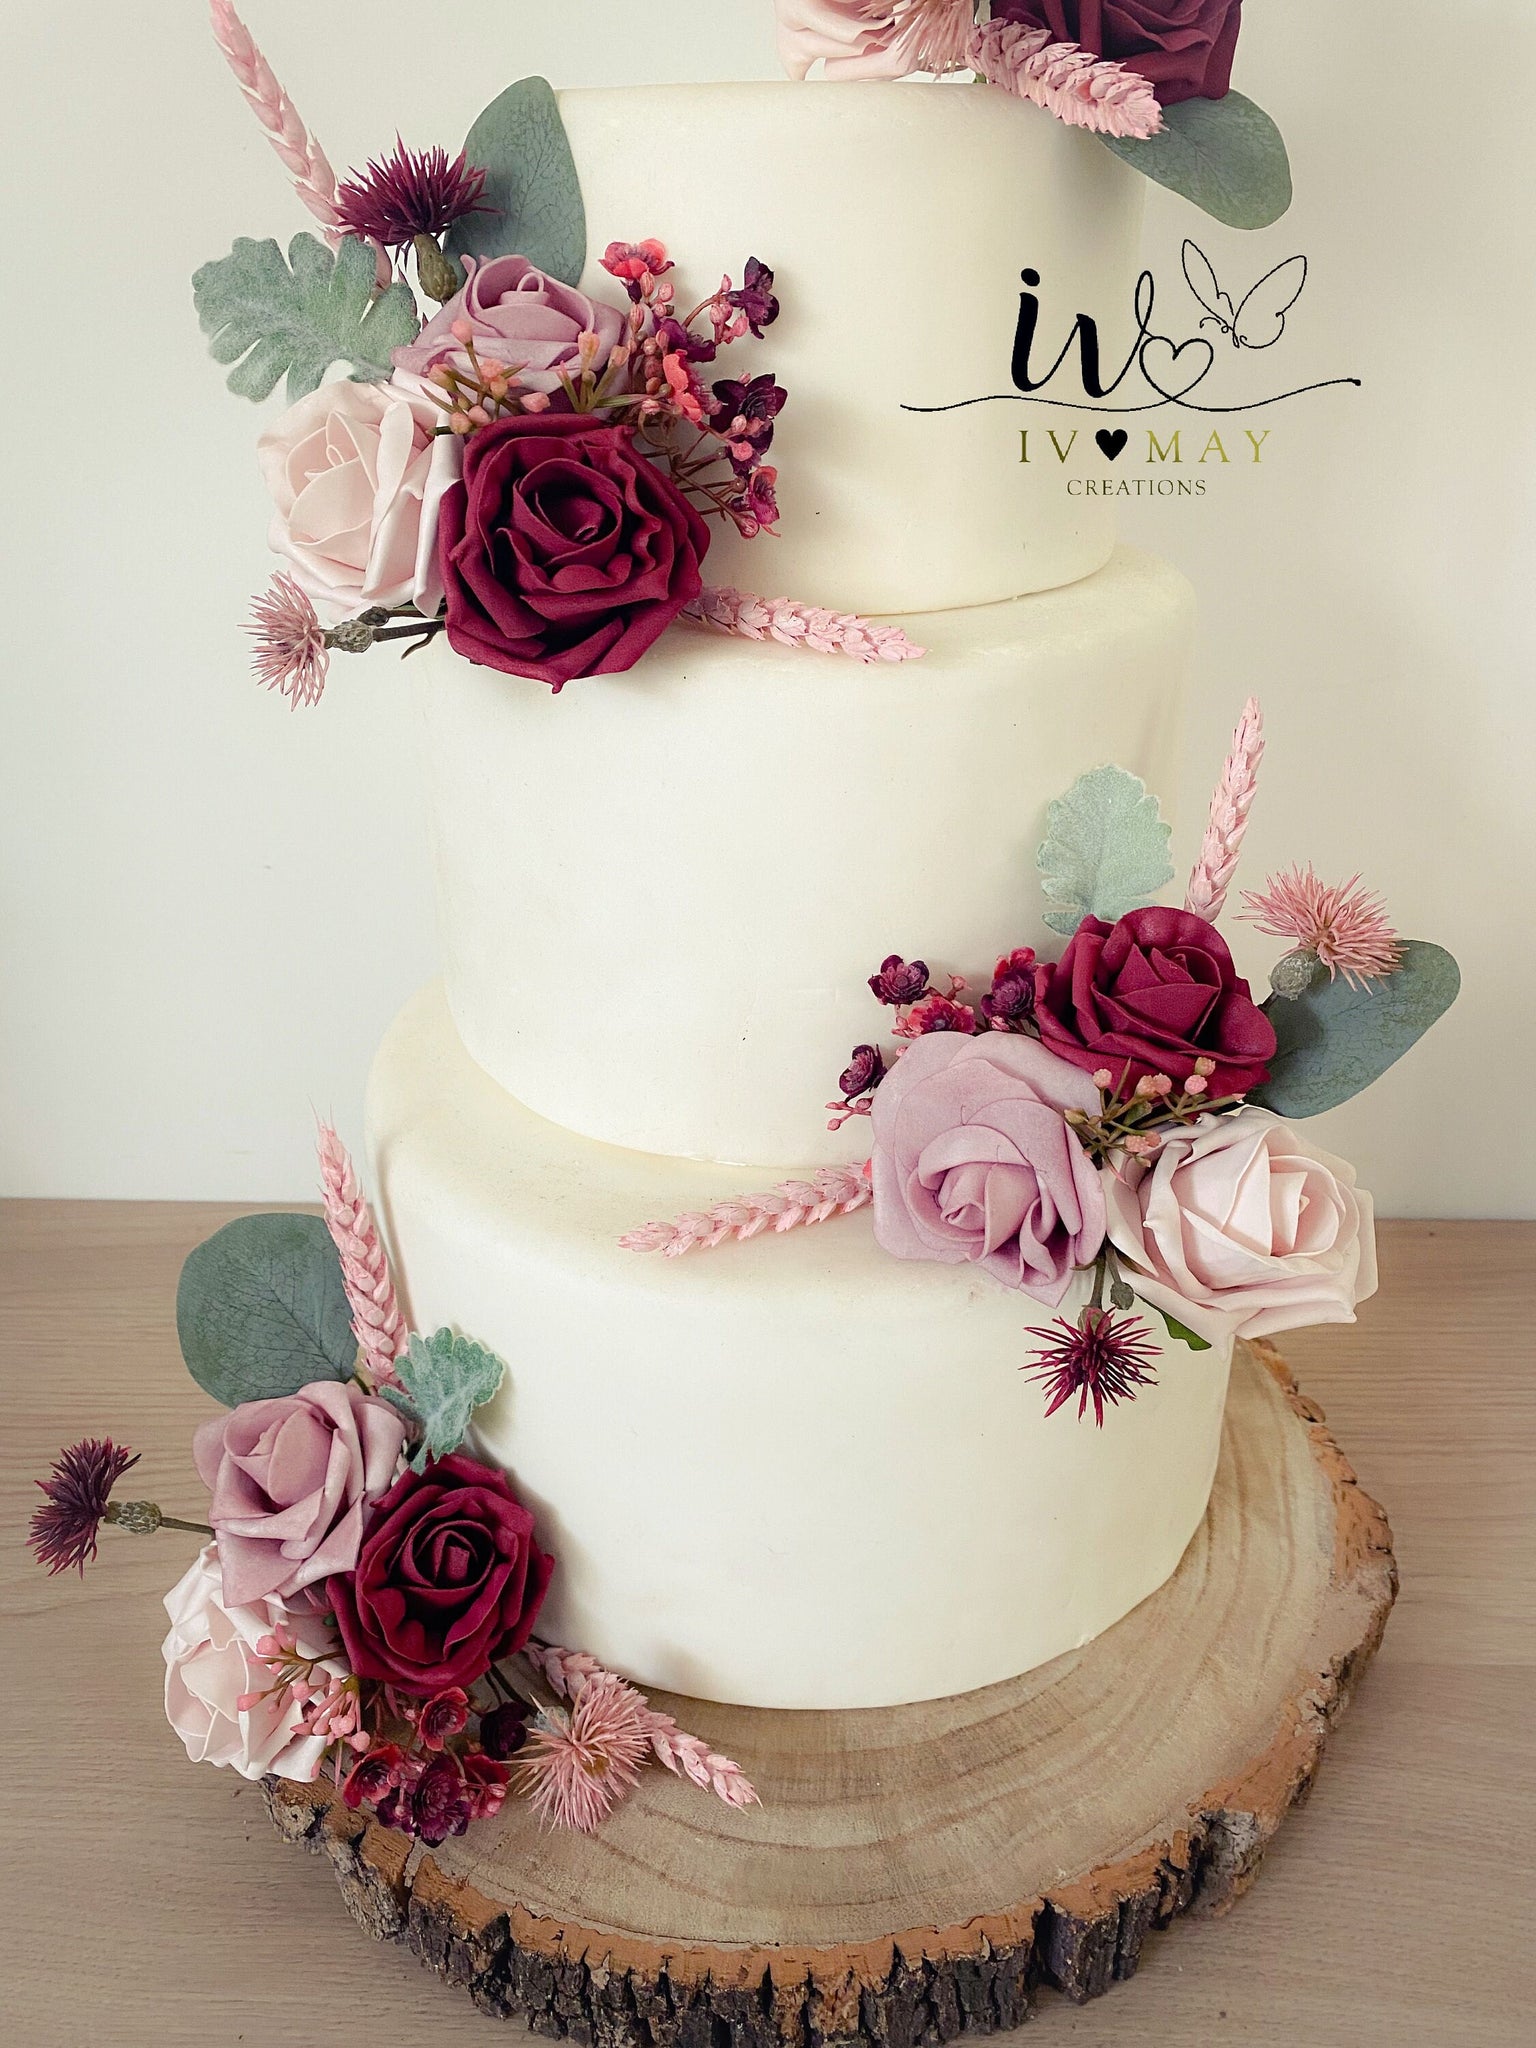 67 Best Wedding Cake Ideas: The Best Wedding Cake Inspiration -  hitched.co.uk - hitched.co.uk